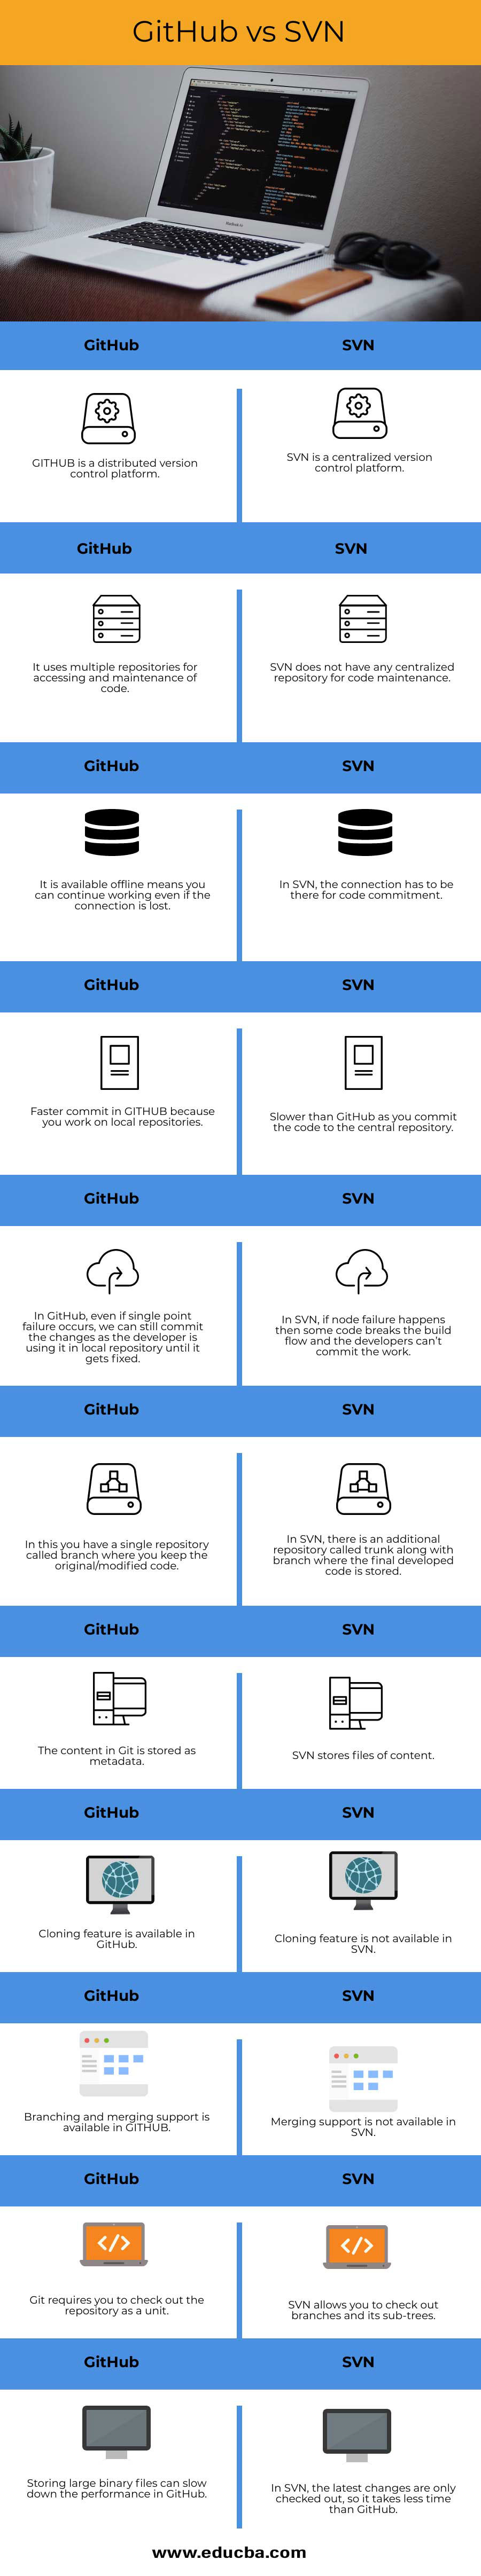 GitHub-vs-SVN-info